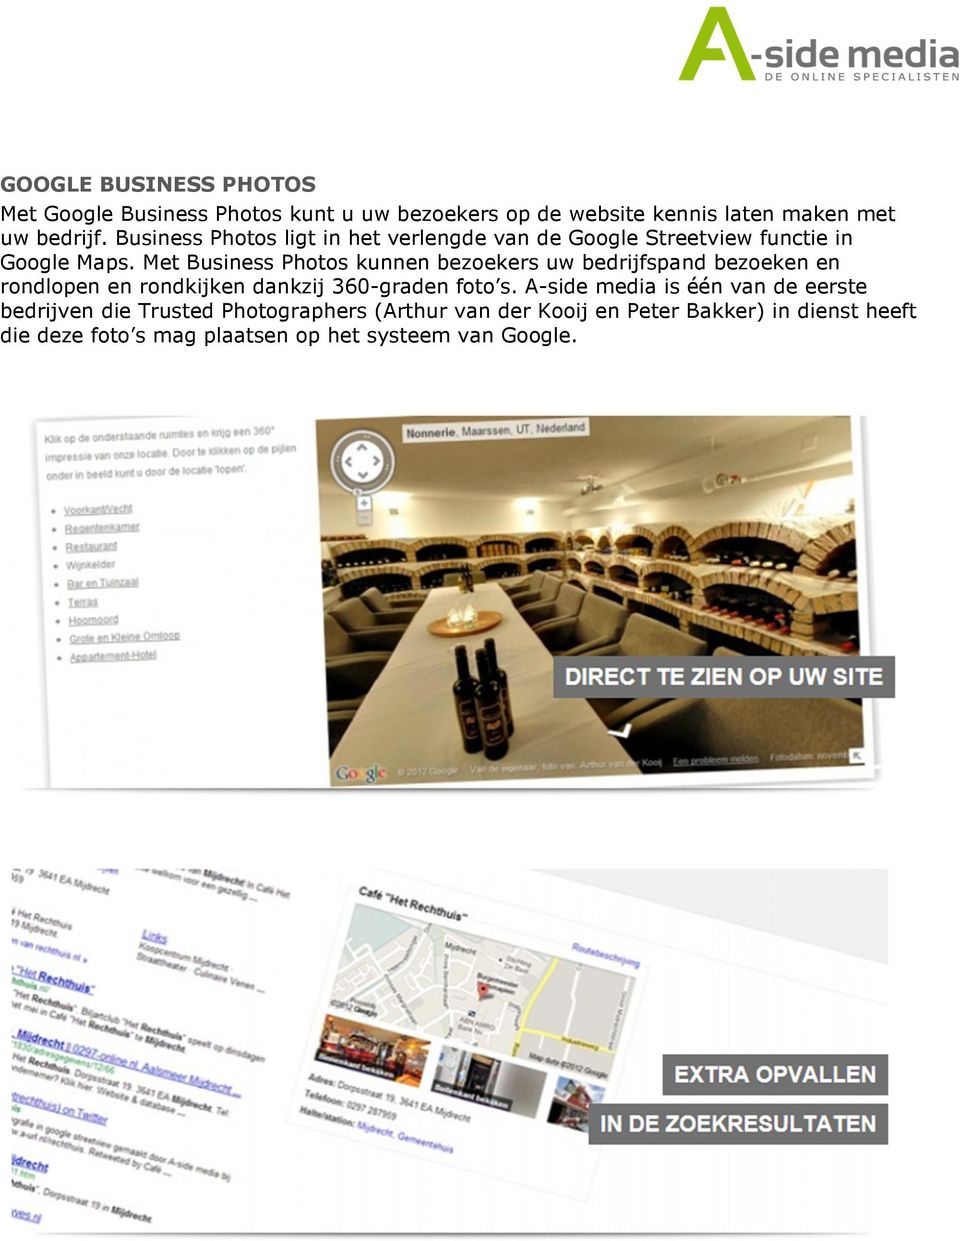 Met Business Photos kunnen bezoekers uw bedrijfspand bezoeken en rondlopen en rondkijken dankzij 360-graden foto s.